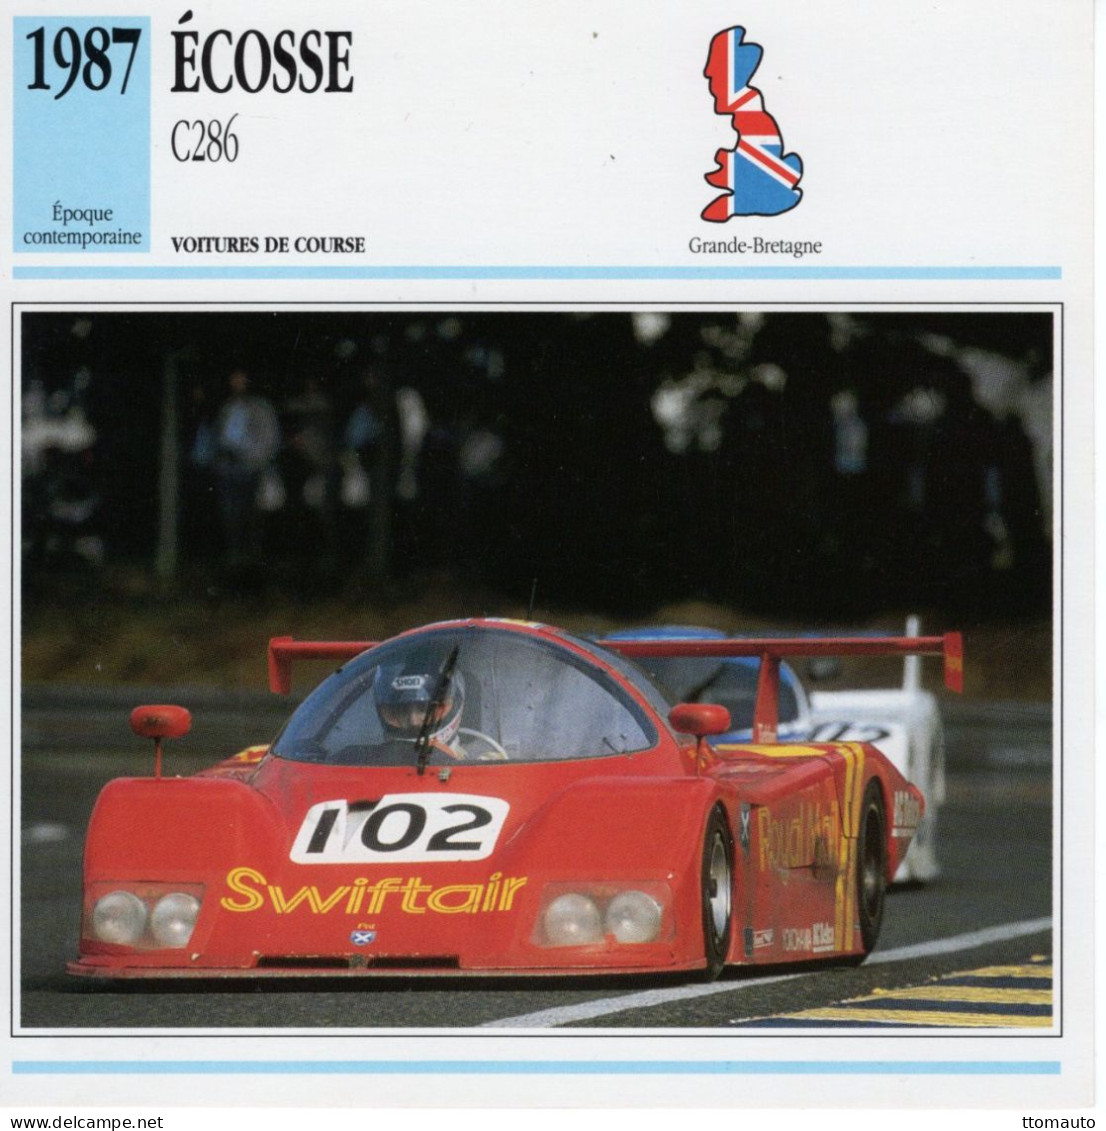 Fiche  -  Voiture De Course Le Mans  -  Écosse C286 (1987)  - Pilotes: Duez/Mallock/Leslie -  Carte De Collection - Automobili